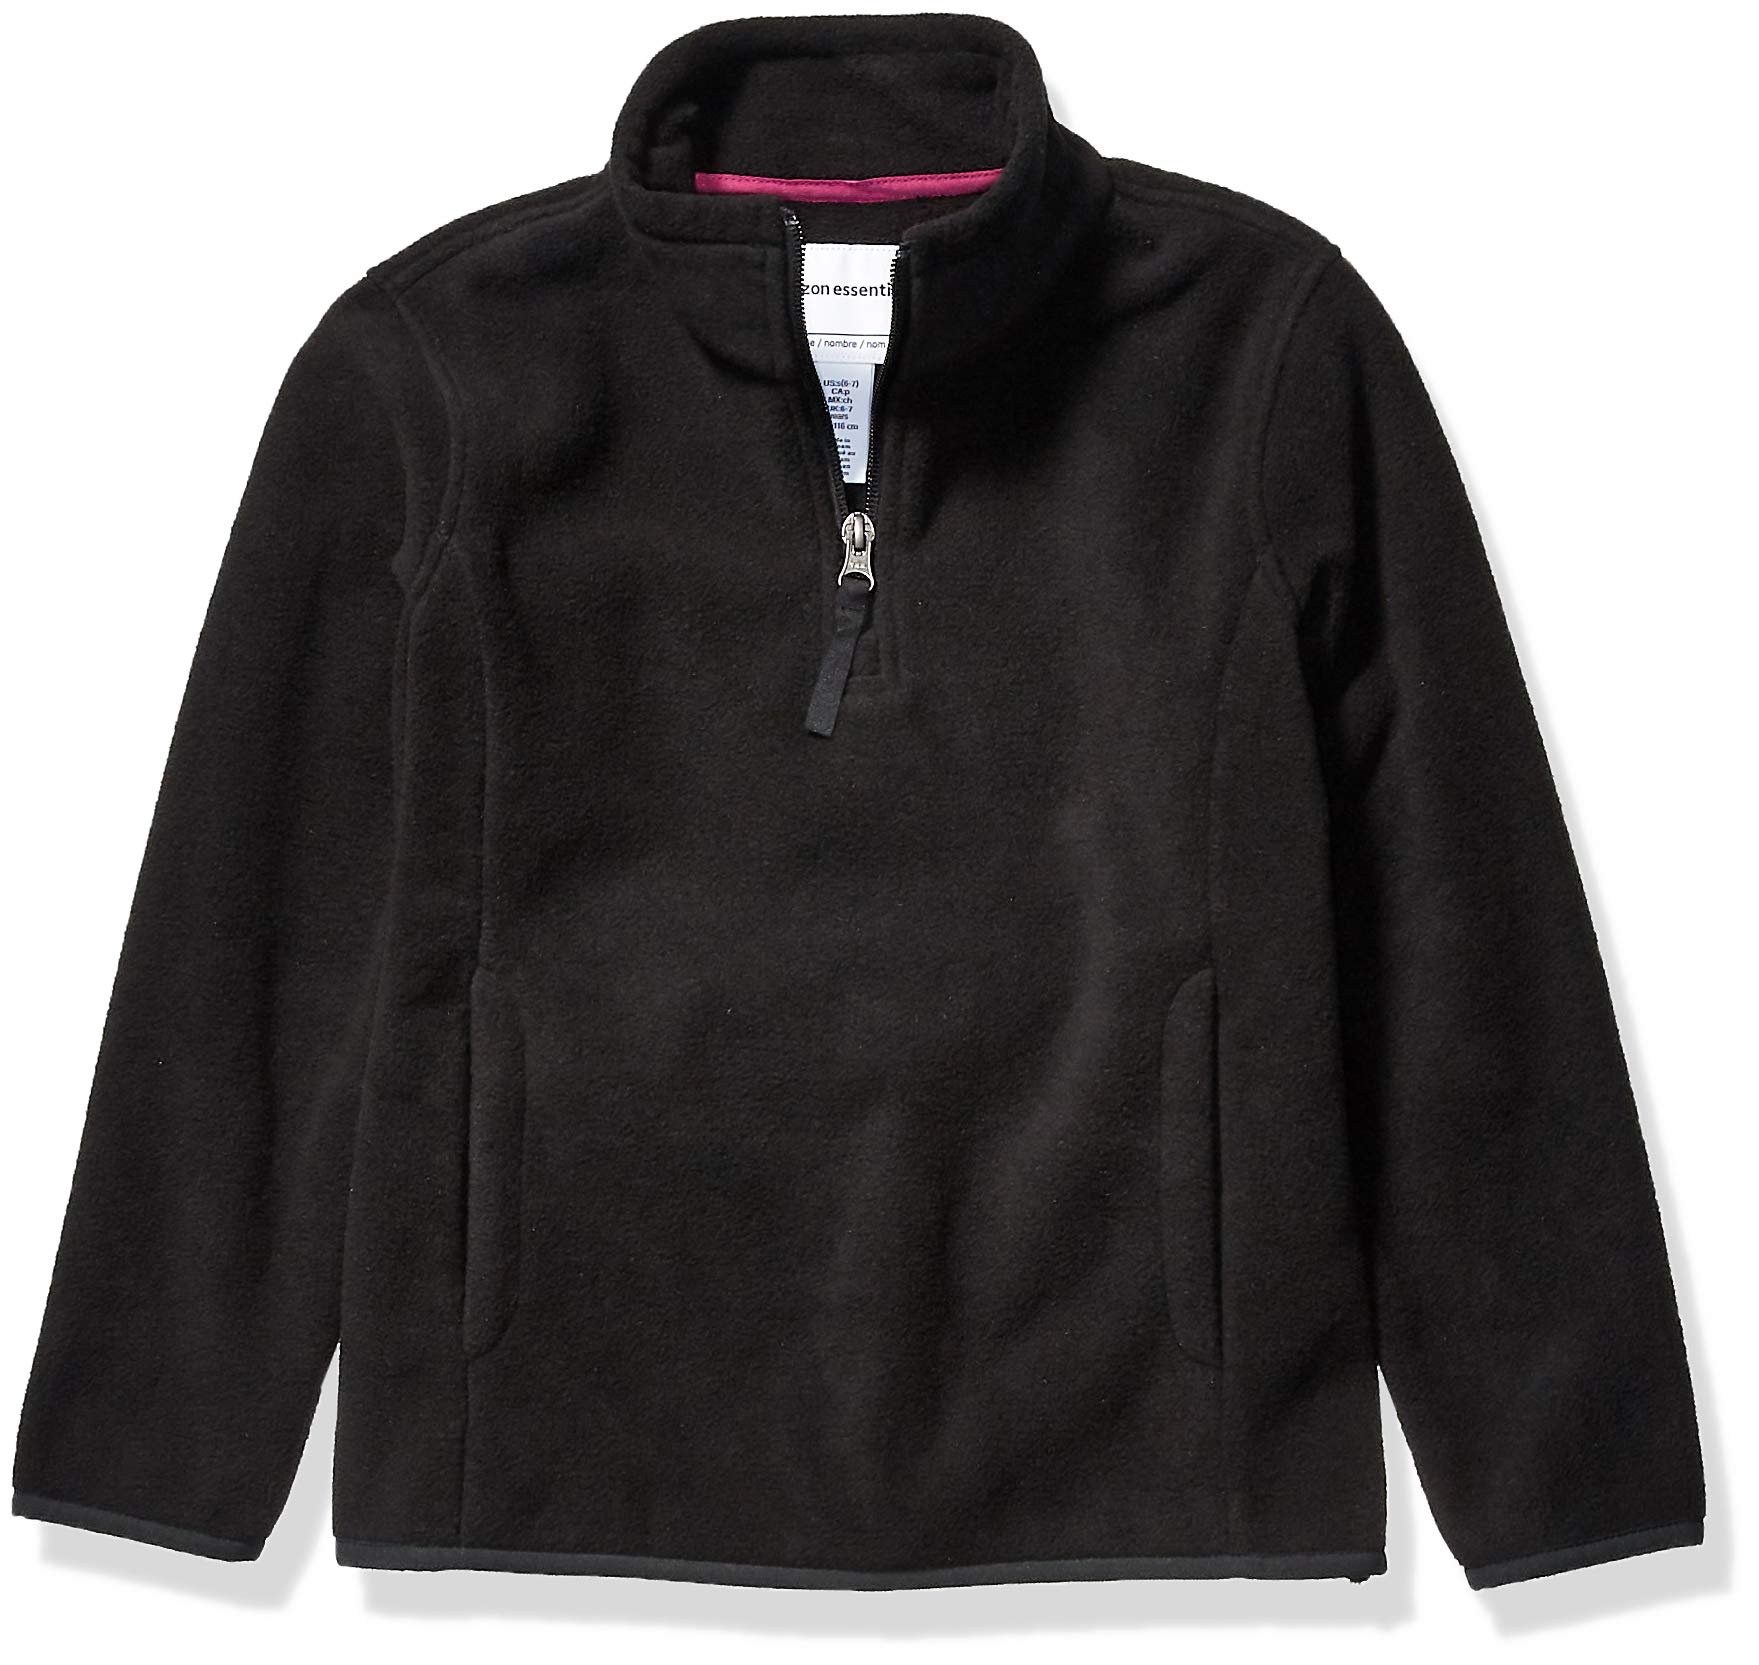 Amazon Essentials Girls and Toddlers' Quarter-Zip Polar Fleece Jacket